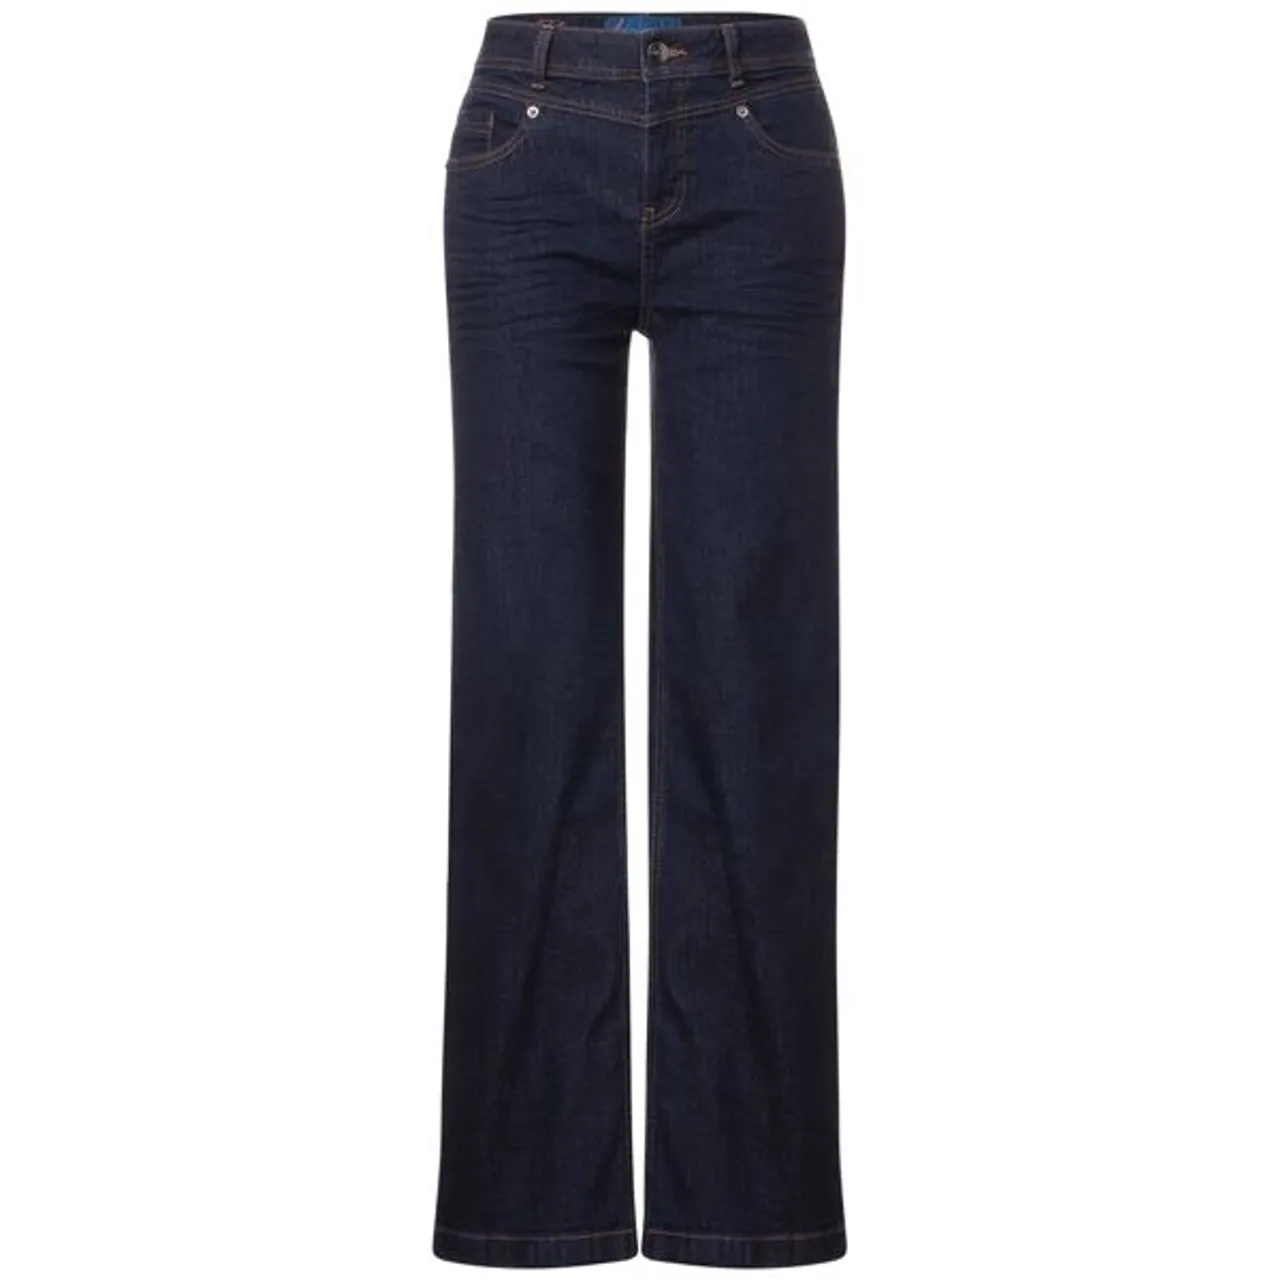 Loose-fit-Jeans STREET ONE Gr. 36, Länge 28, blau (indigo rinsed wash) Damen Jeans Weite